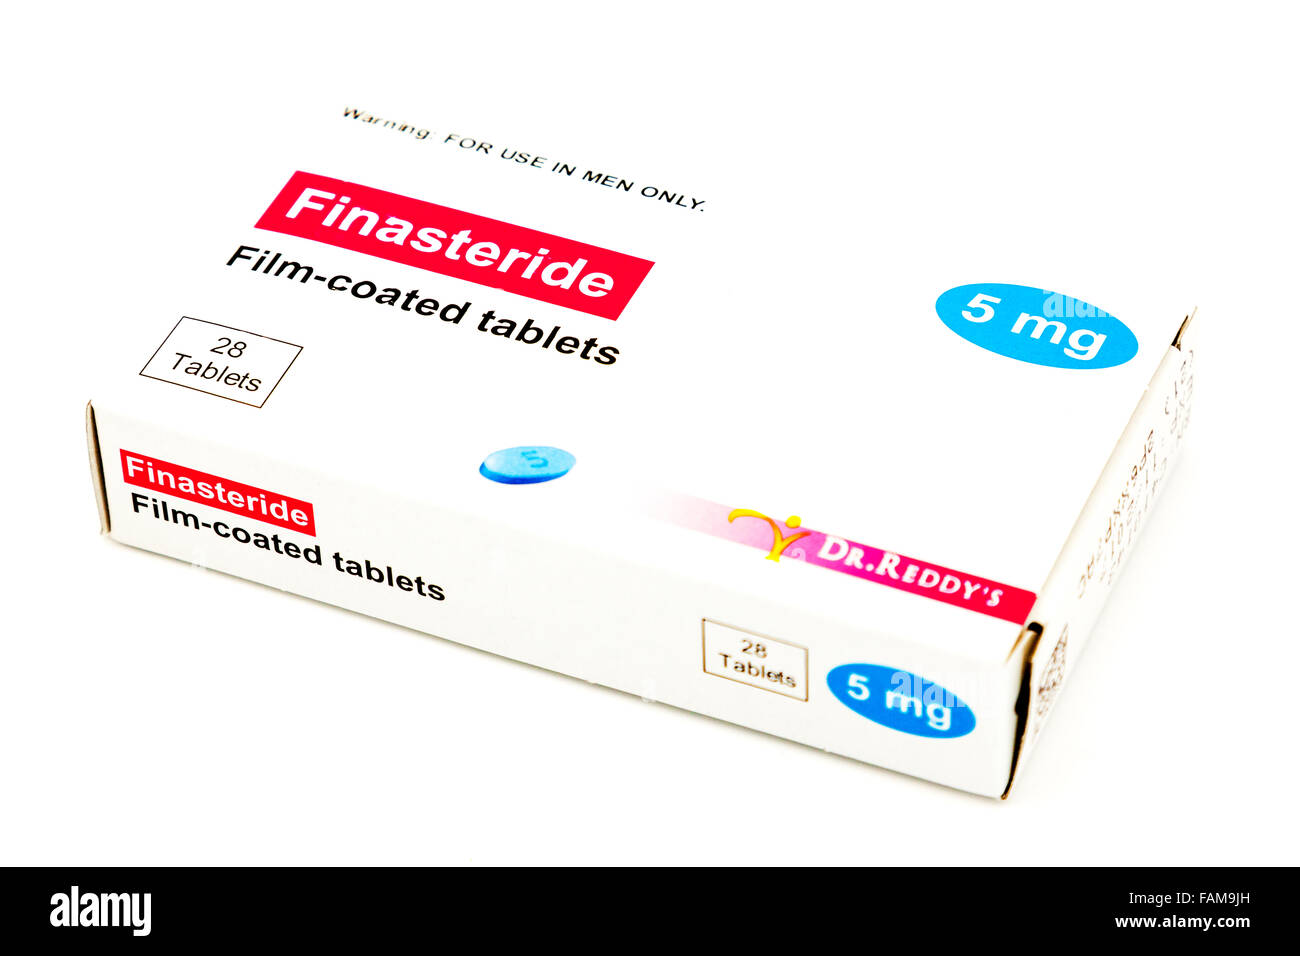 Teva Finasteride Tabletten Behandlung der benignen Prostatahyperplasie BPH  Kasten medizinische Medizin Arzneimittel mg oral Pack Droge Drogen  Stockfotografie - Alamy